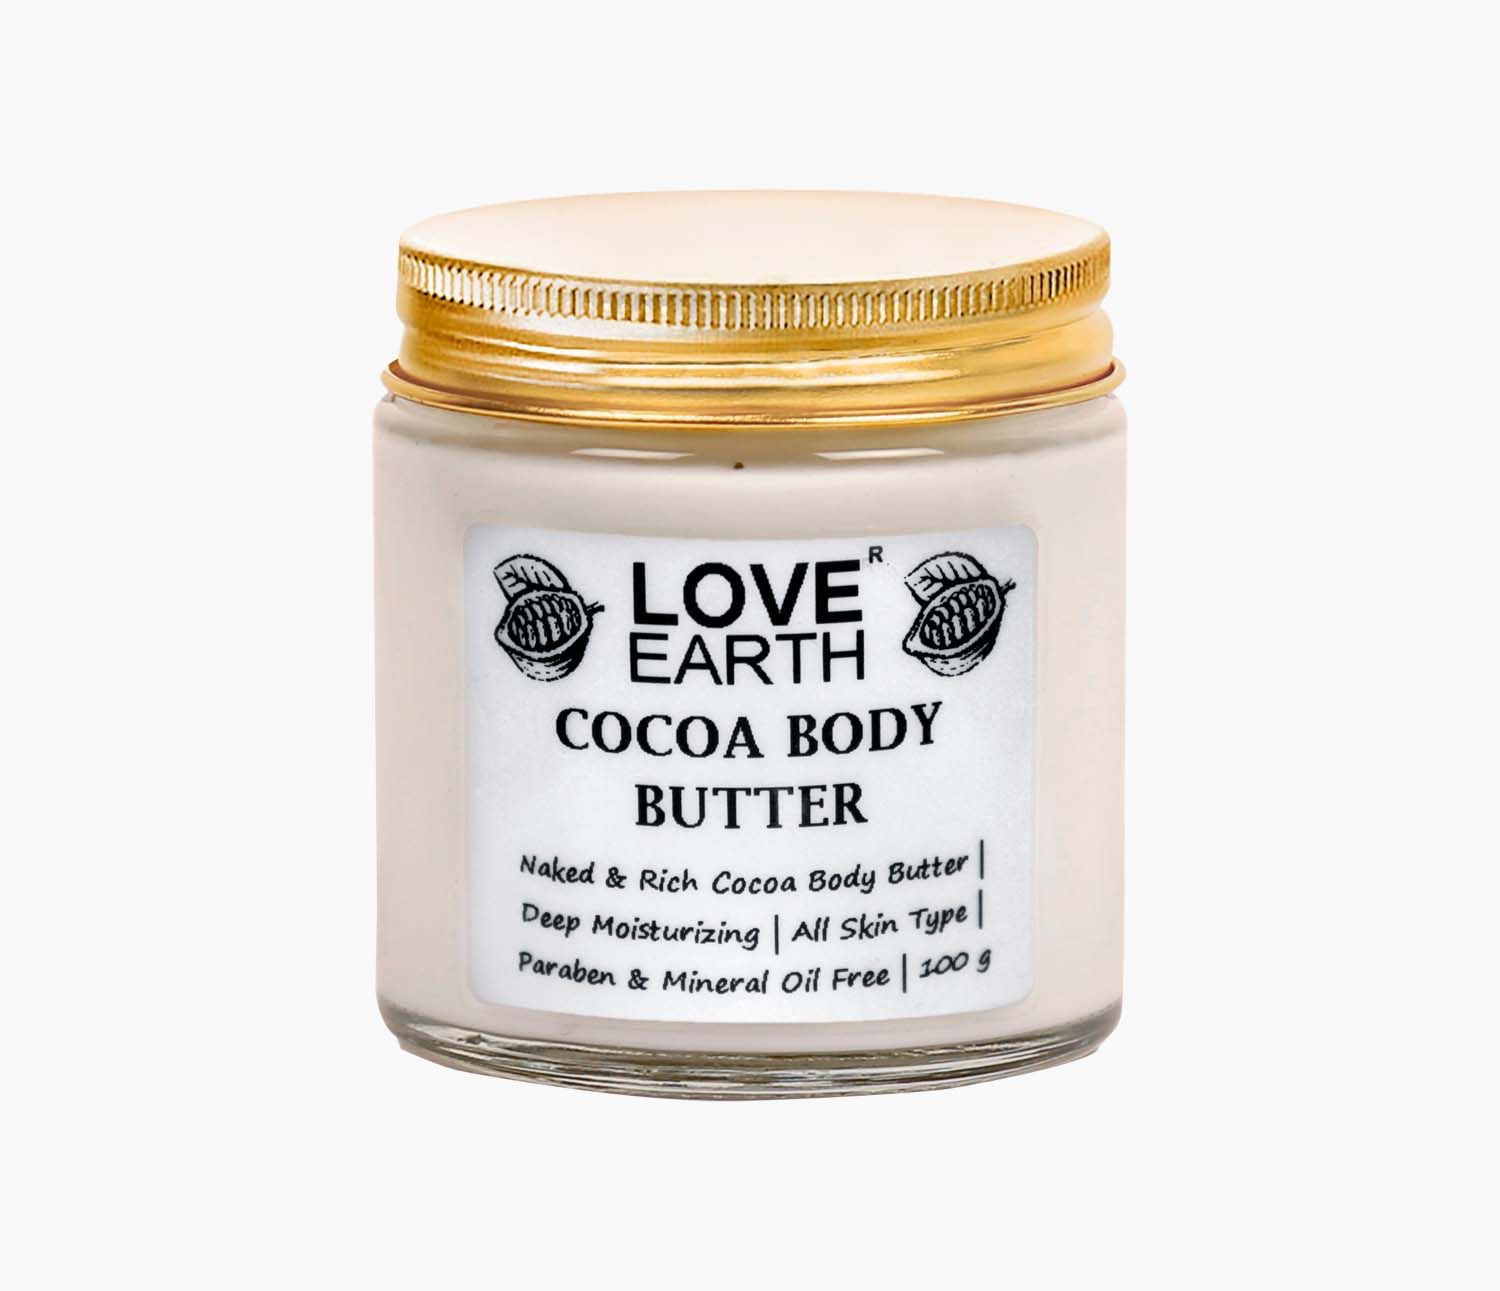 Love Earth Cocoa Body Butter with Organic Cocoa Butter for Skin Moisturization & Nourishment